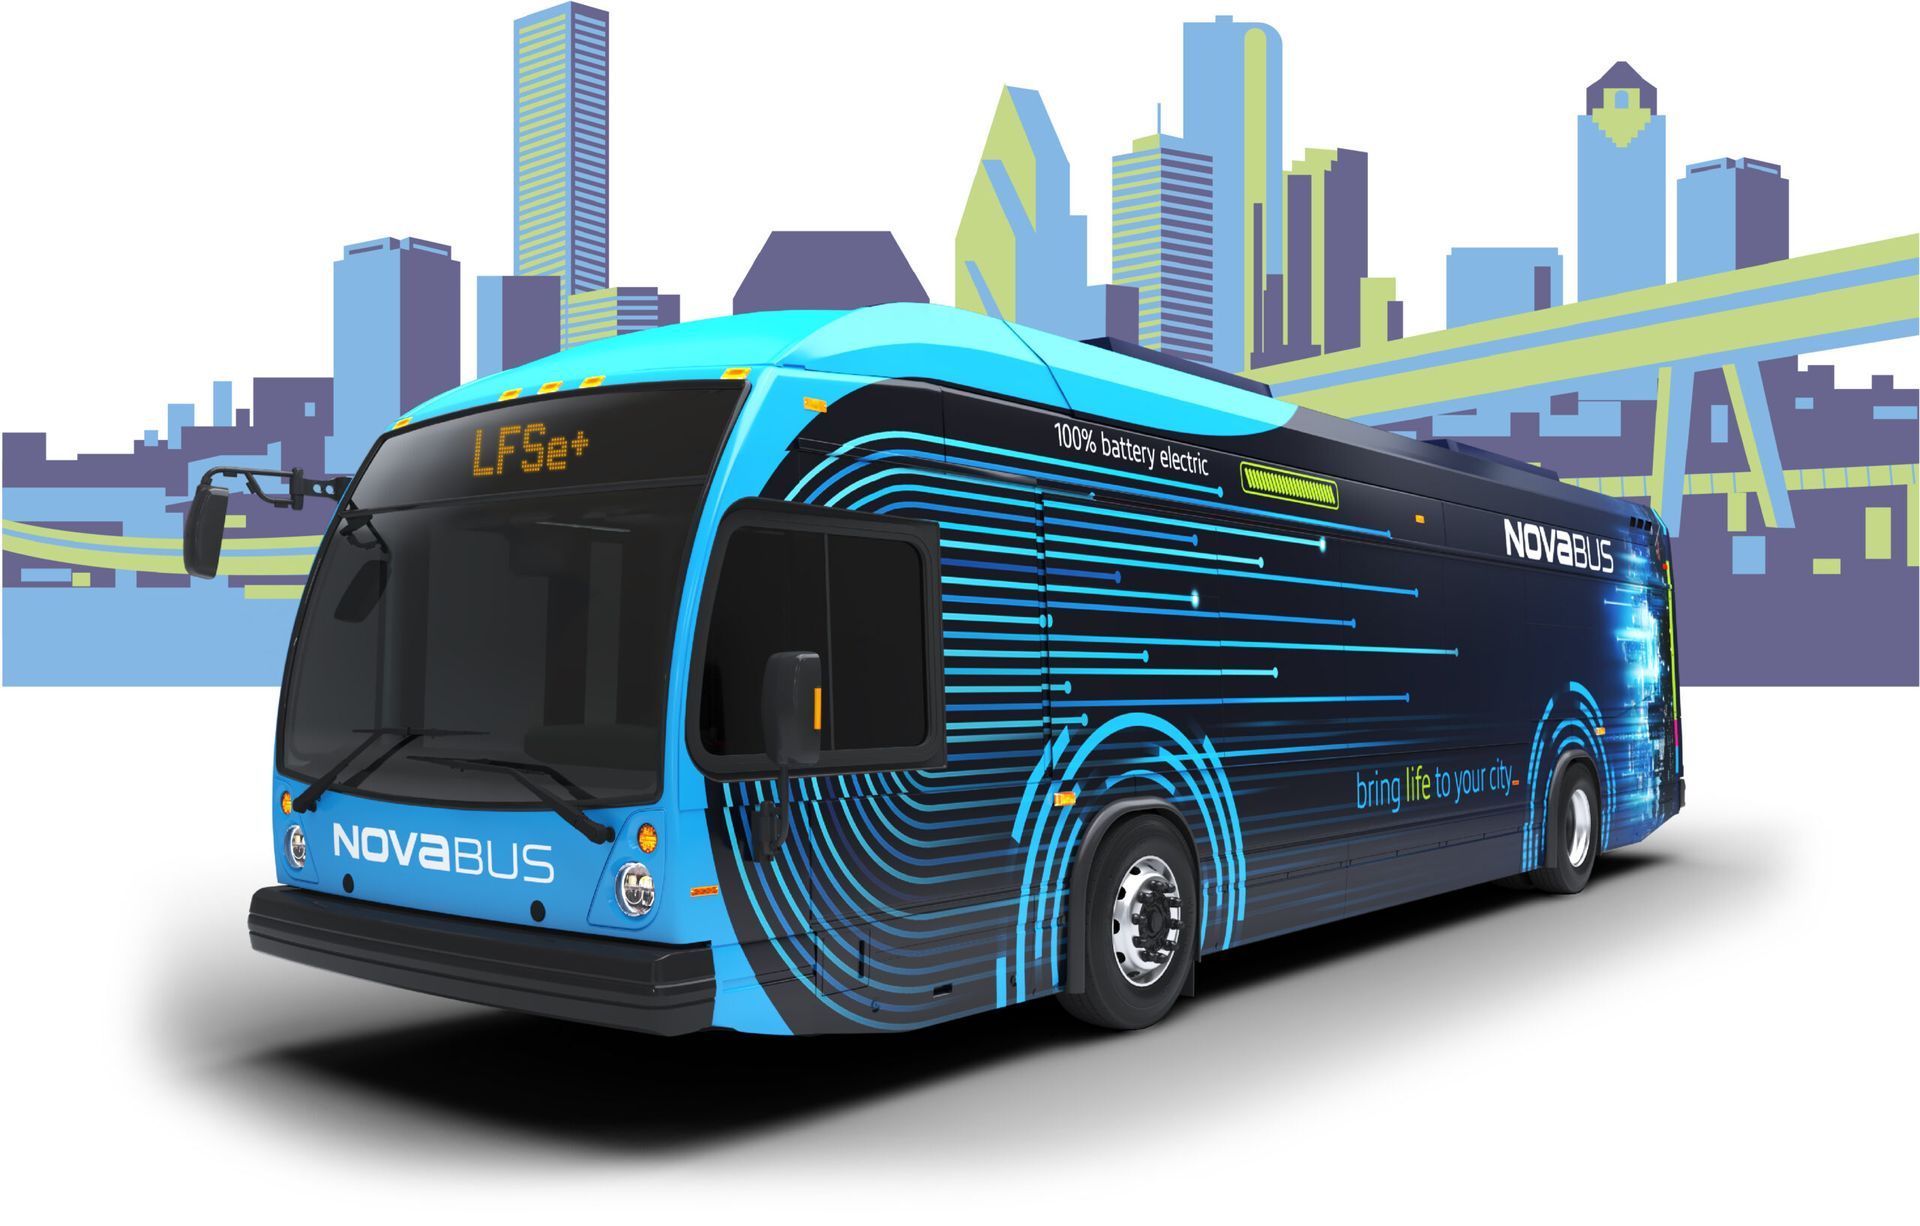 futuristic image of bus